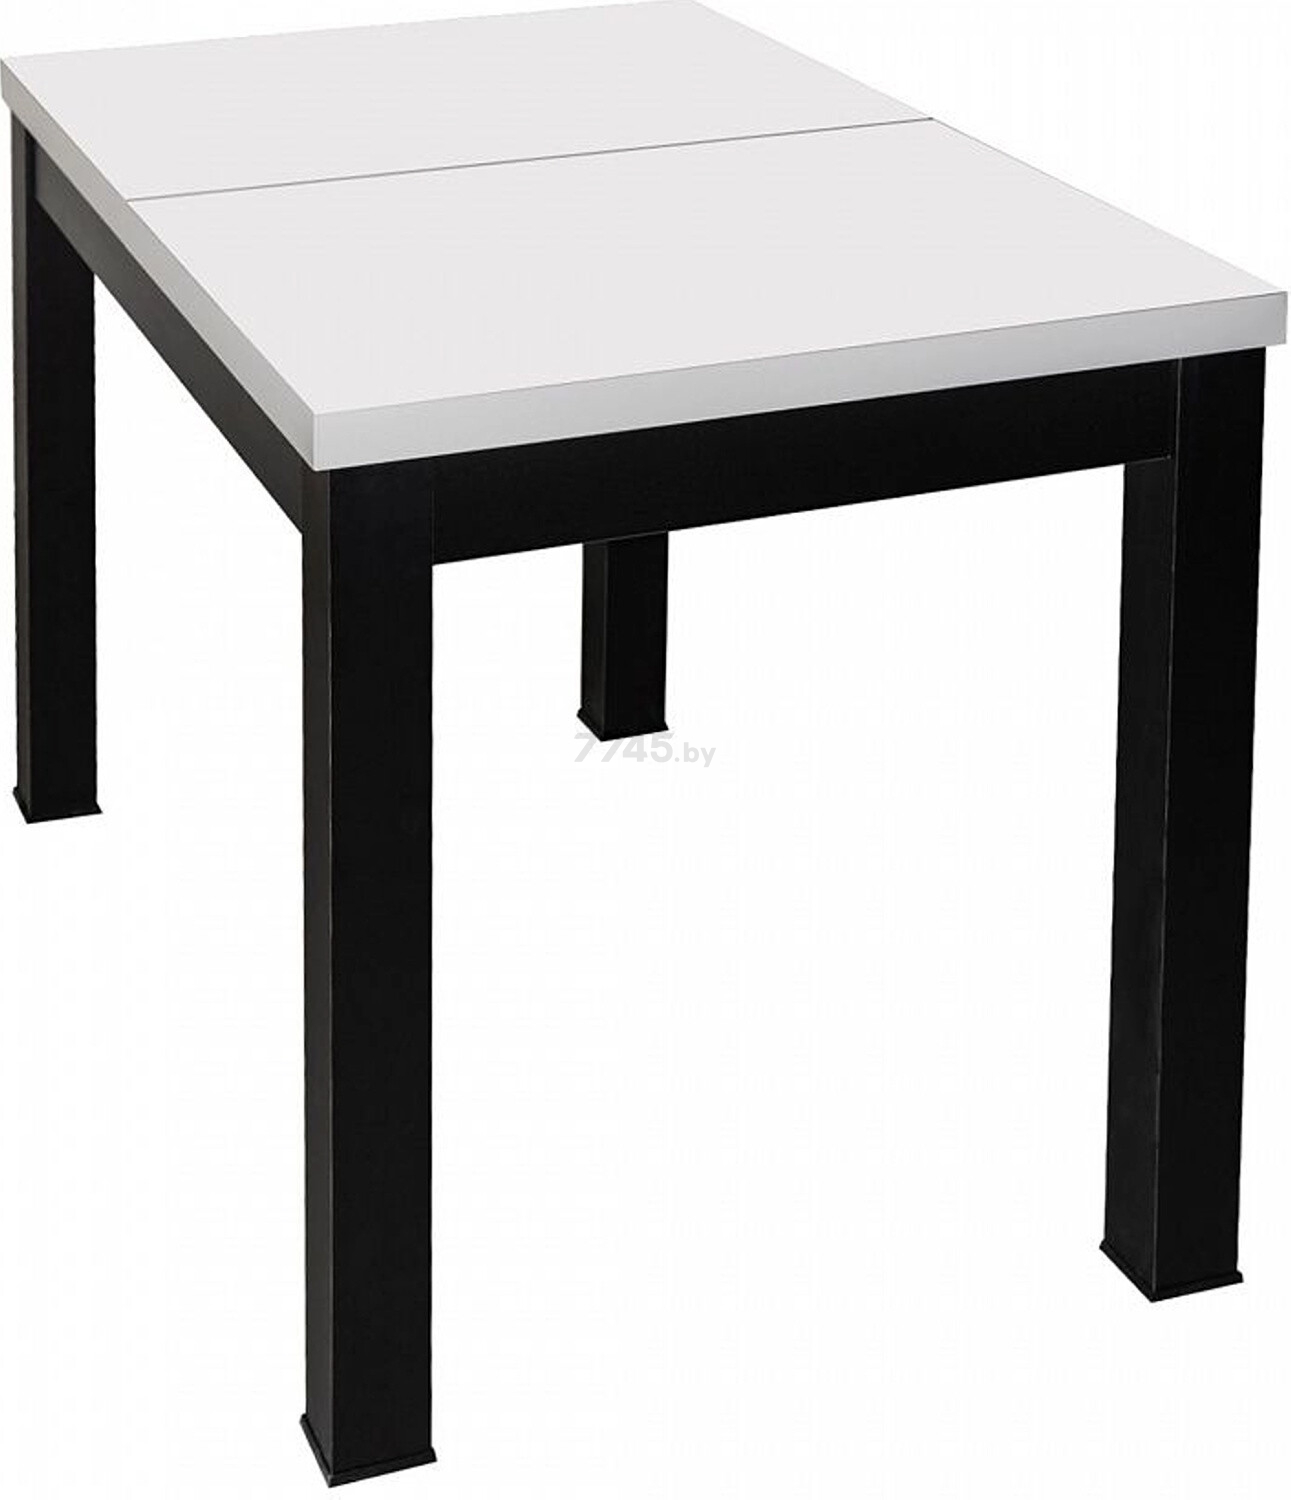 Стол кухонный ЭЛИГАРД Black раздвижной белый матовый 110-149х67х76 см - Фото 5